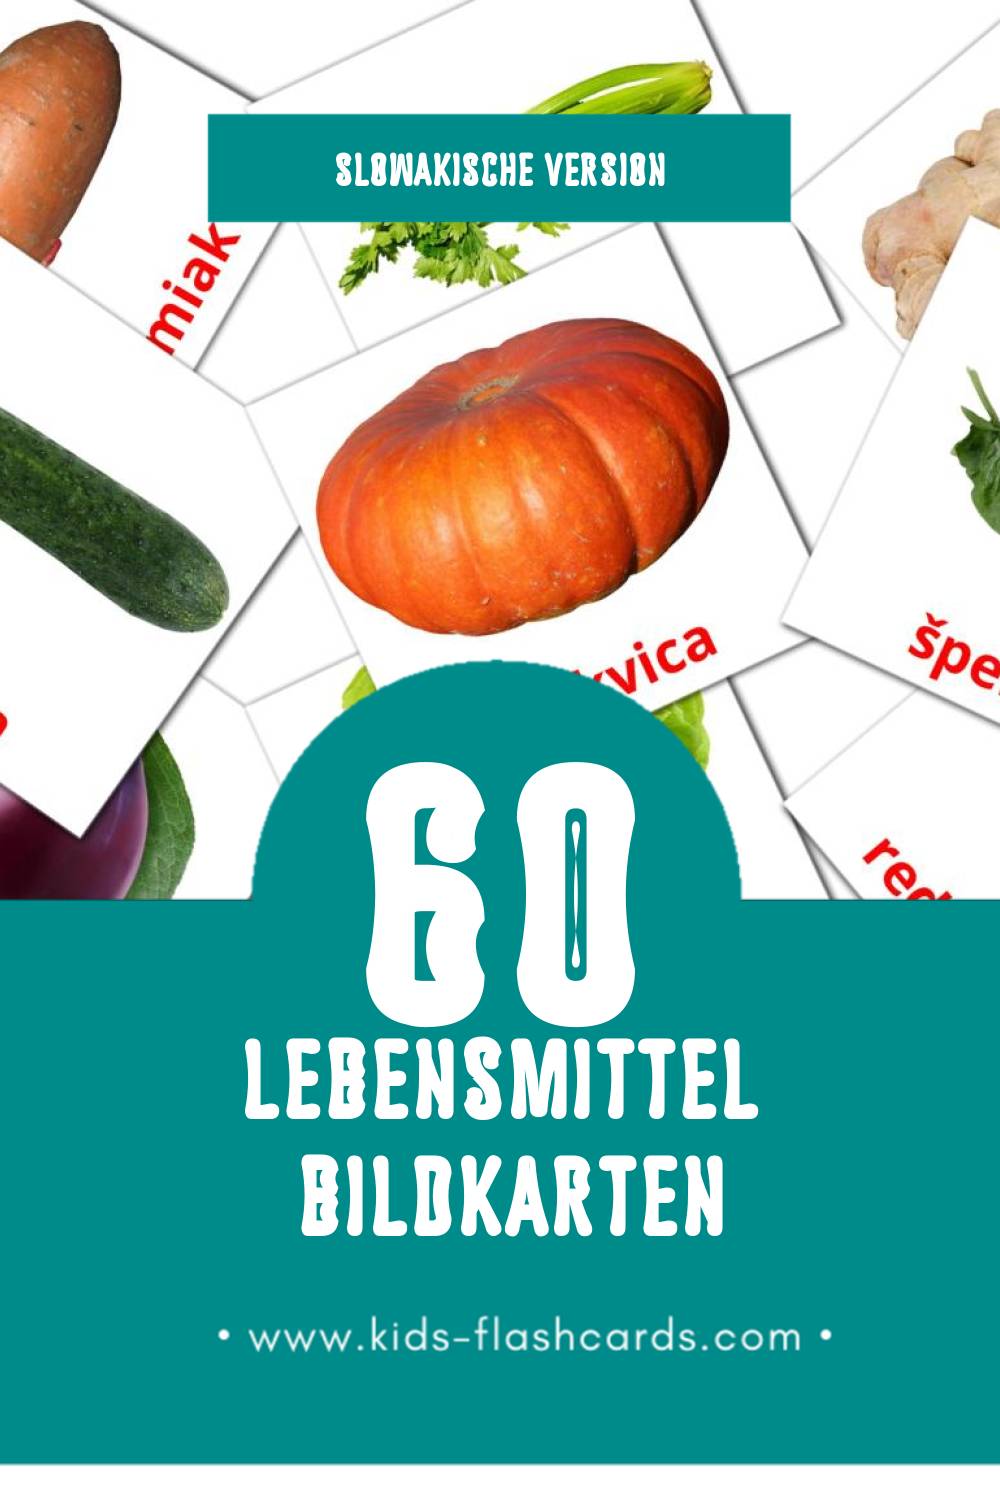 Visual Jedlo Flashcards für Kleinkinder (60 Karten in Slowakisch)